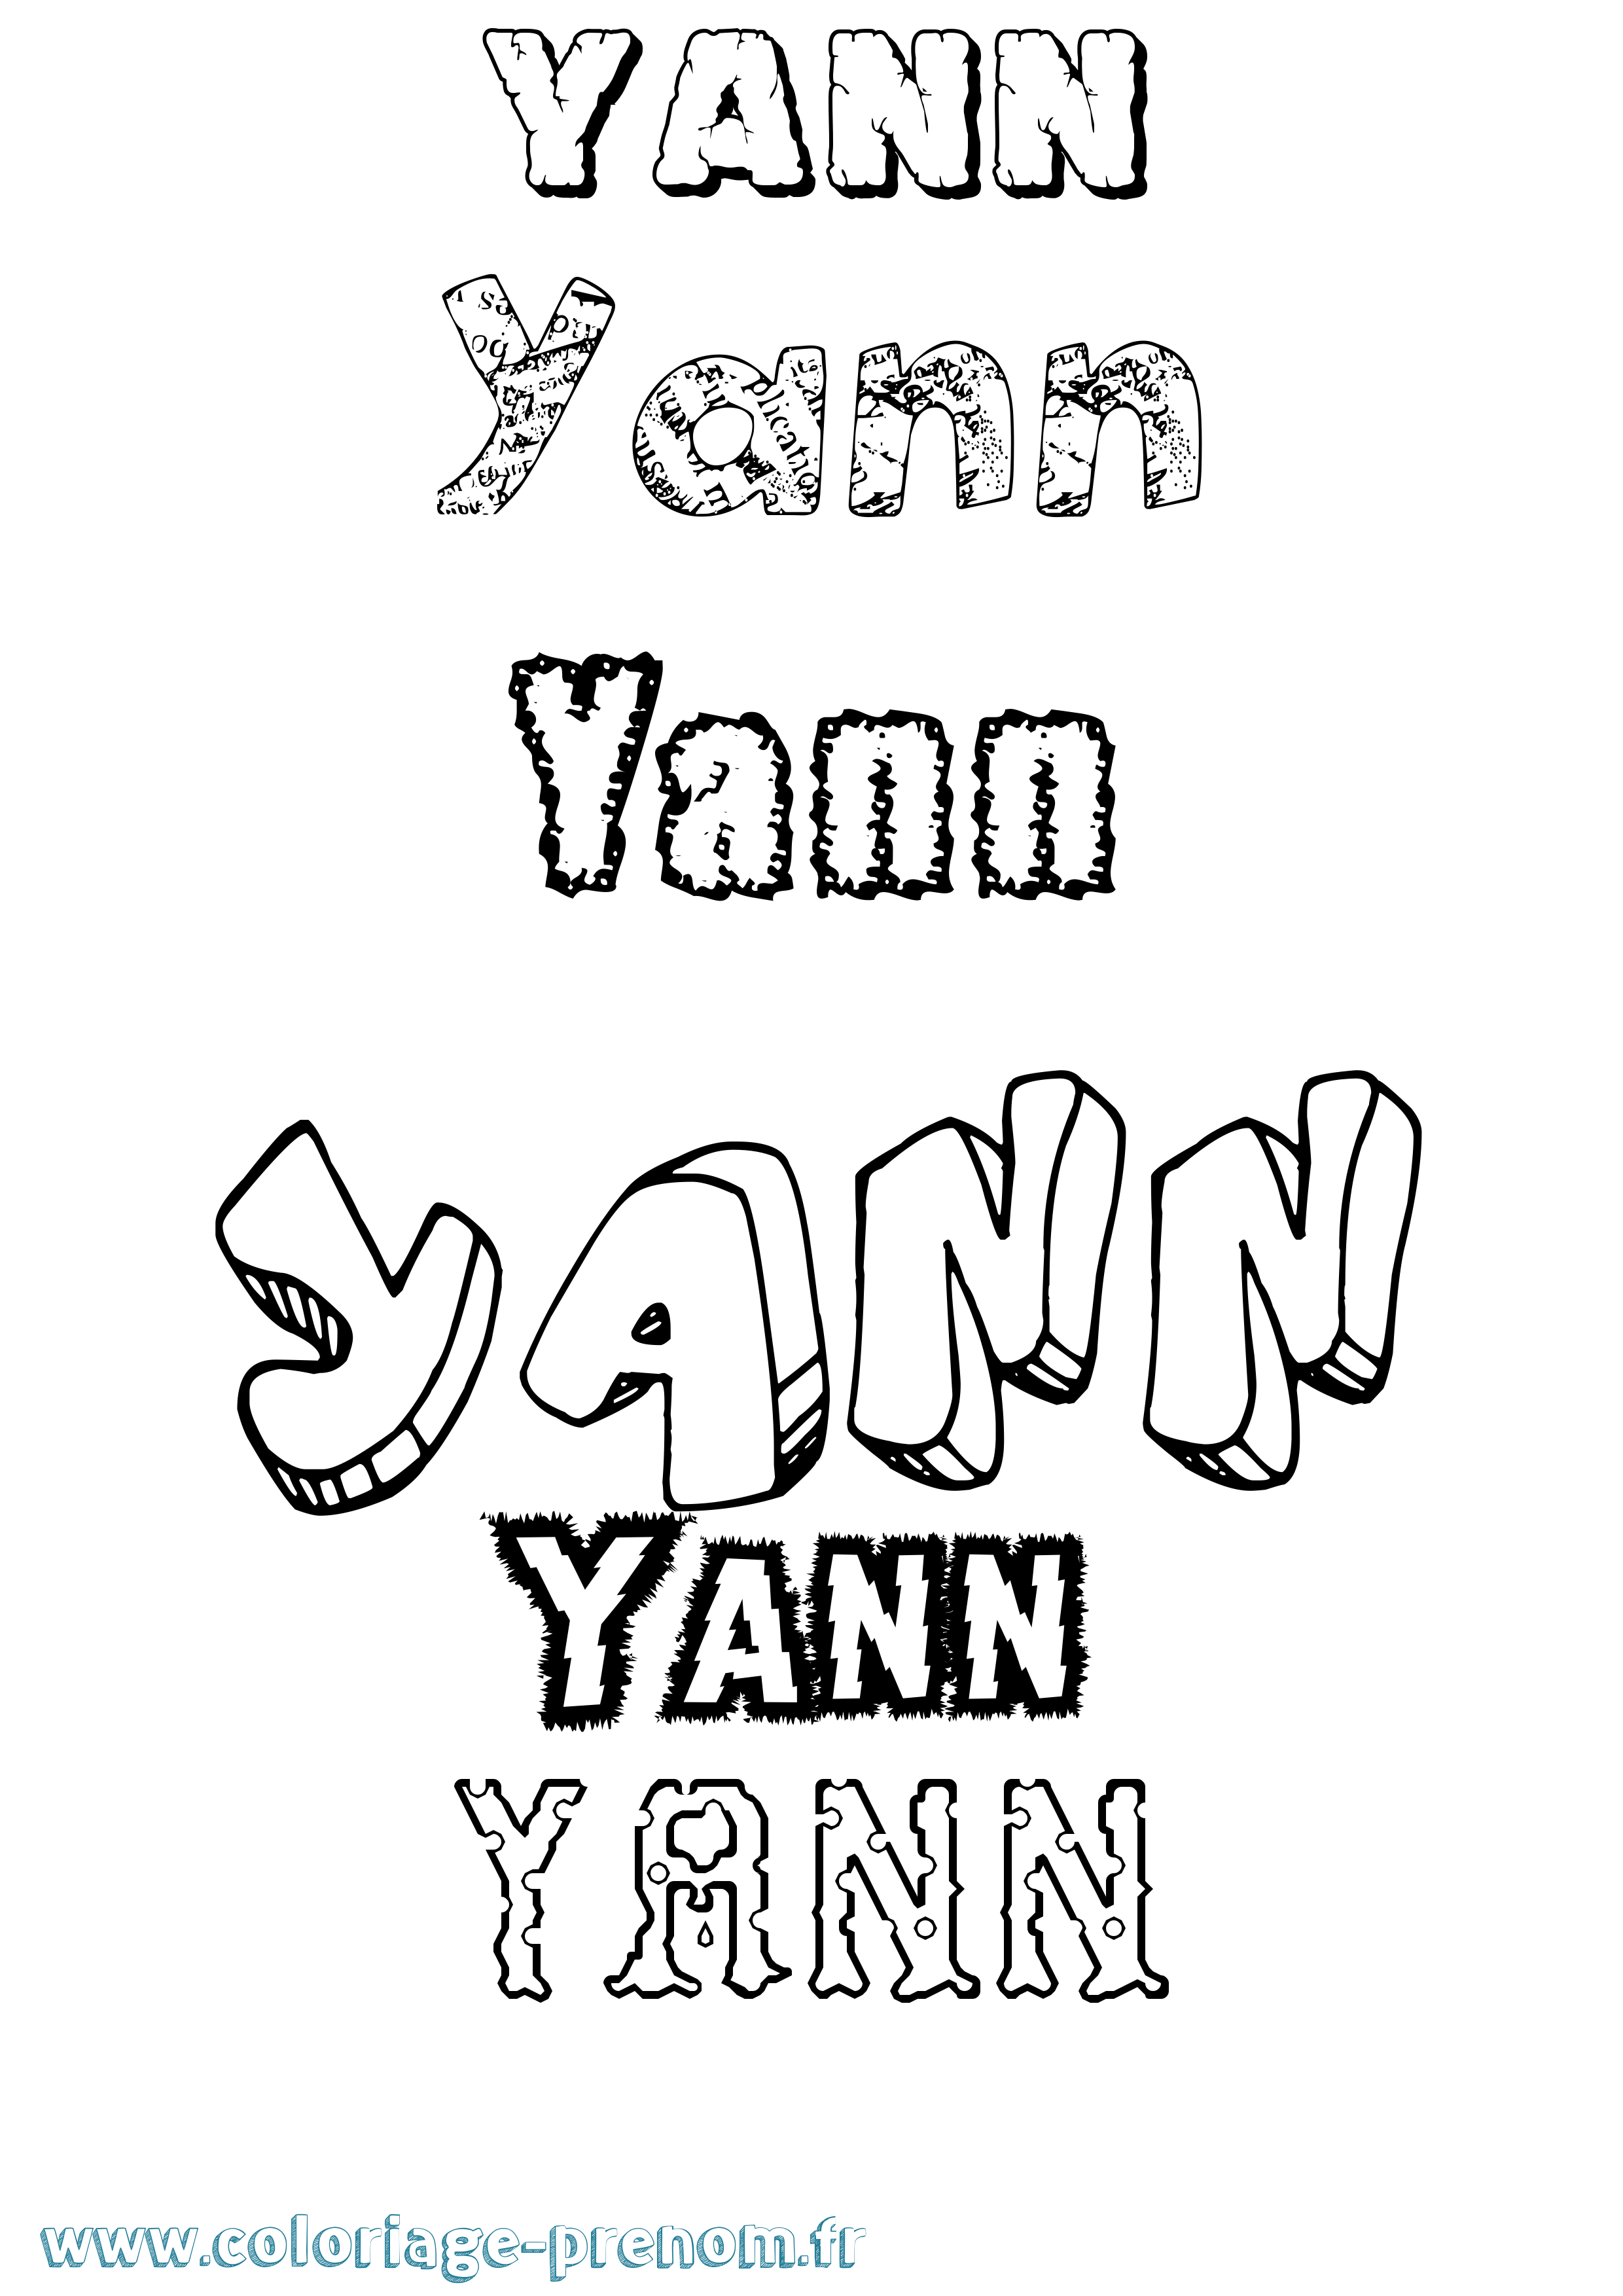 Coloriage prénom Yann